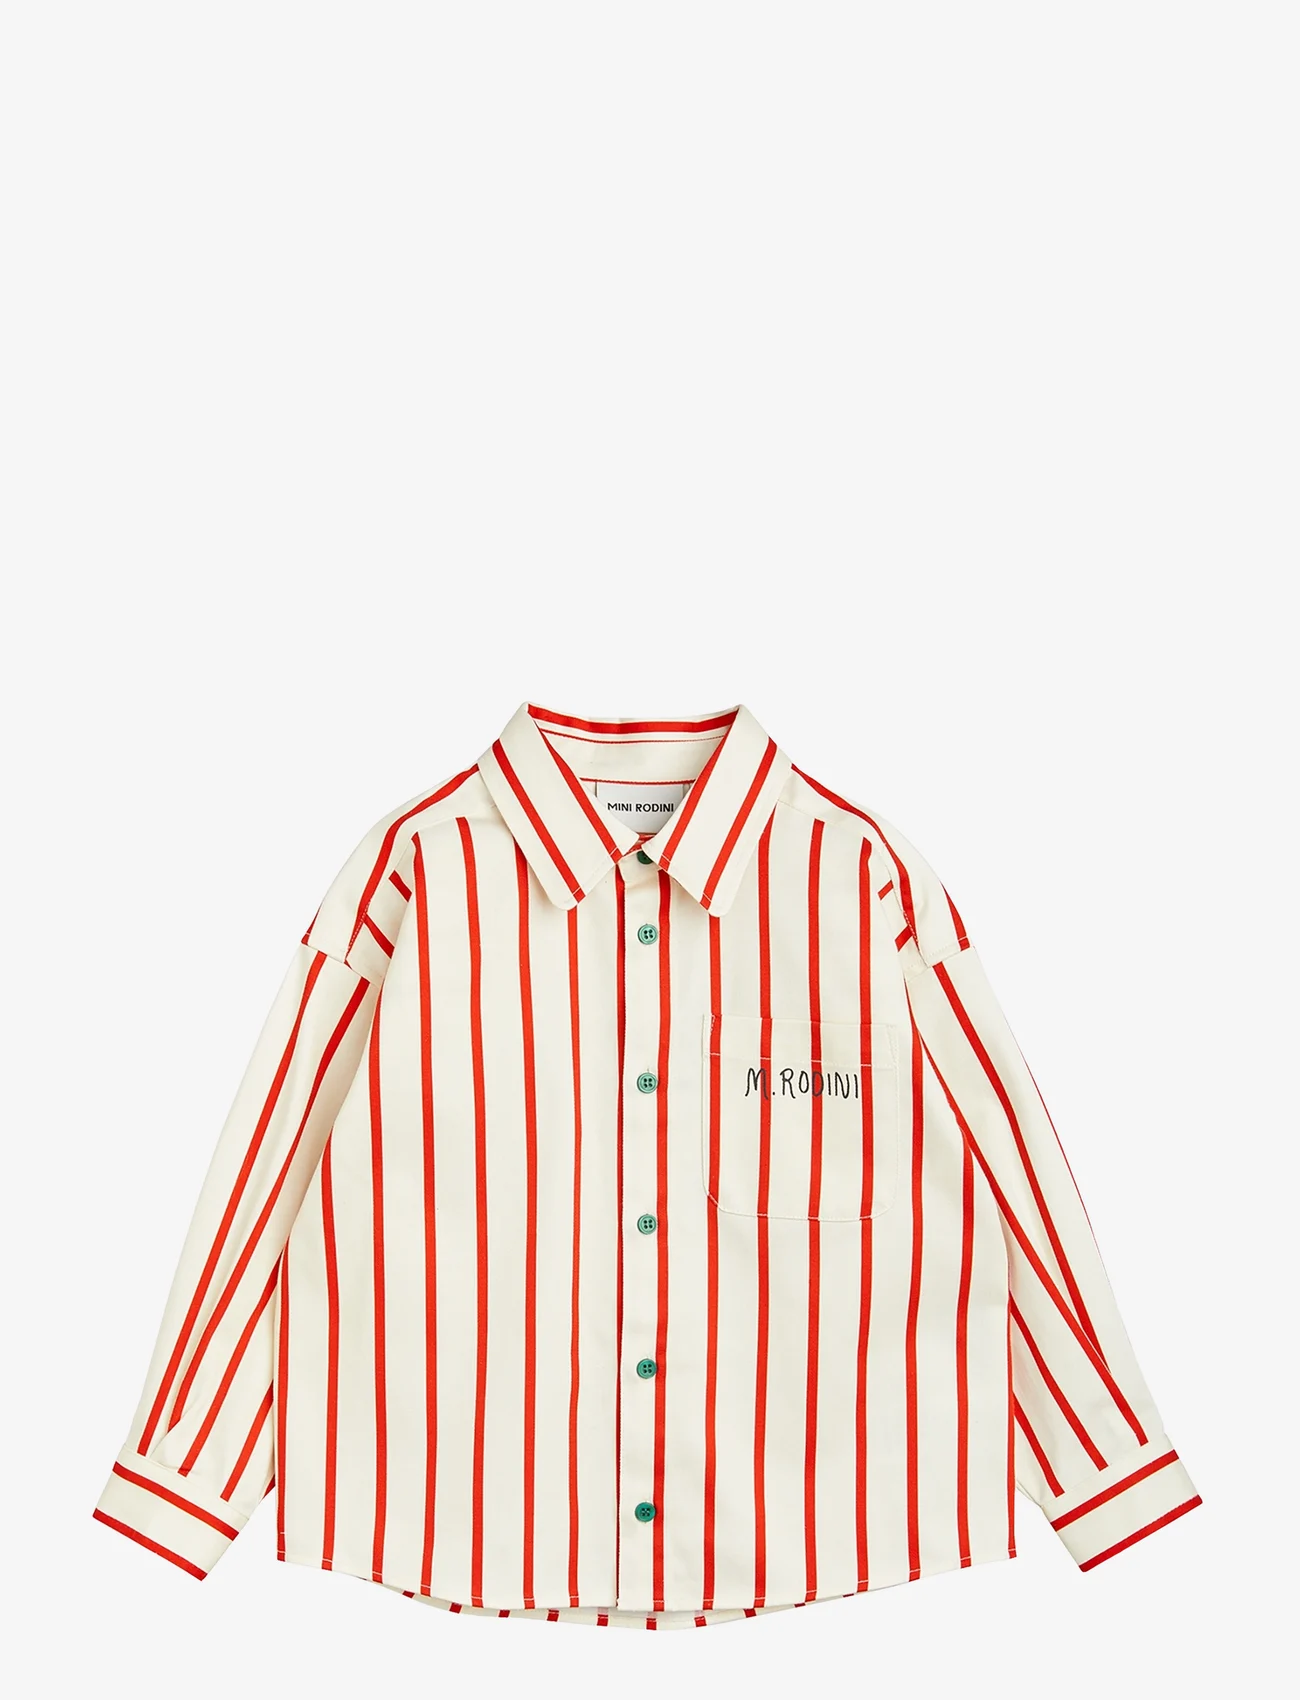 Mini Rodini - Stripe twill shirt - långärmade skjortor - multi - 0